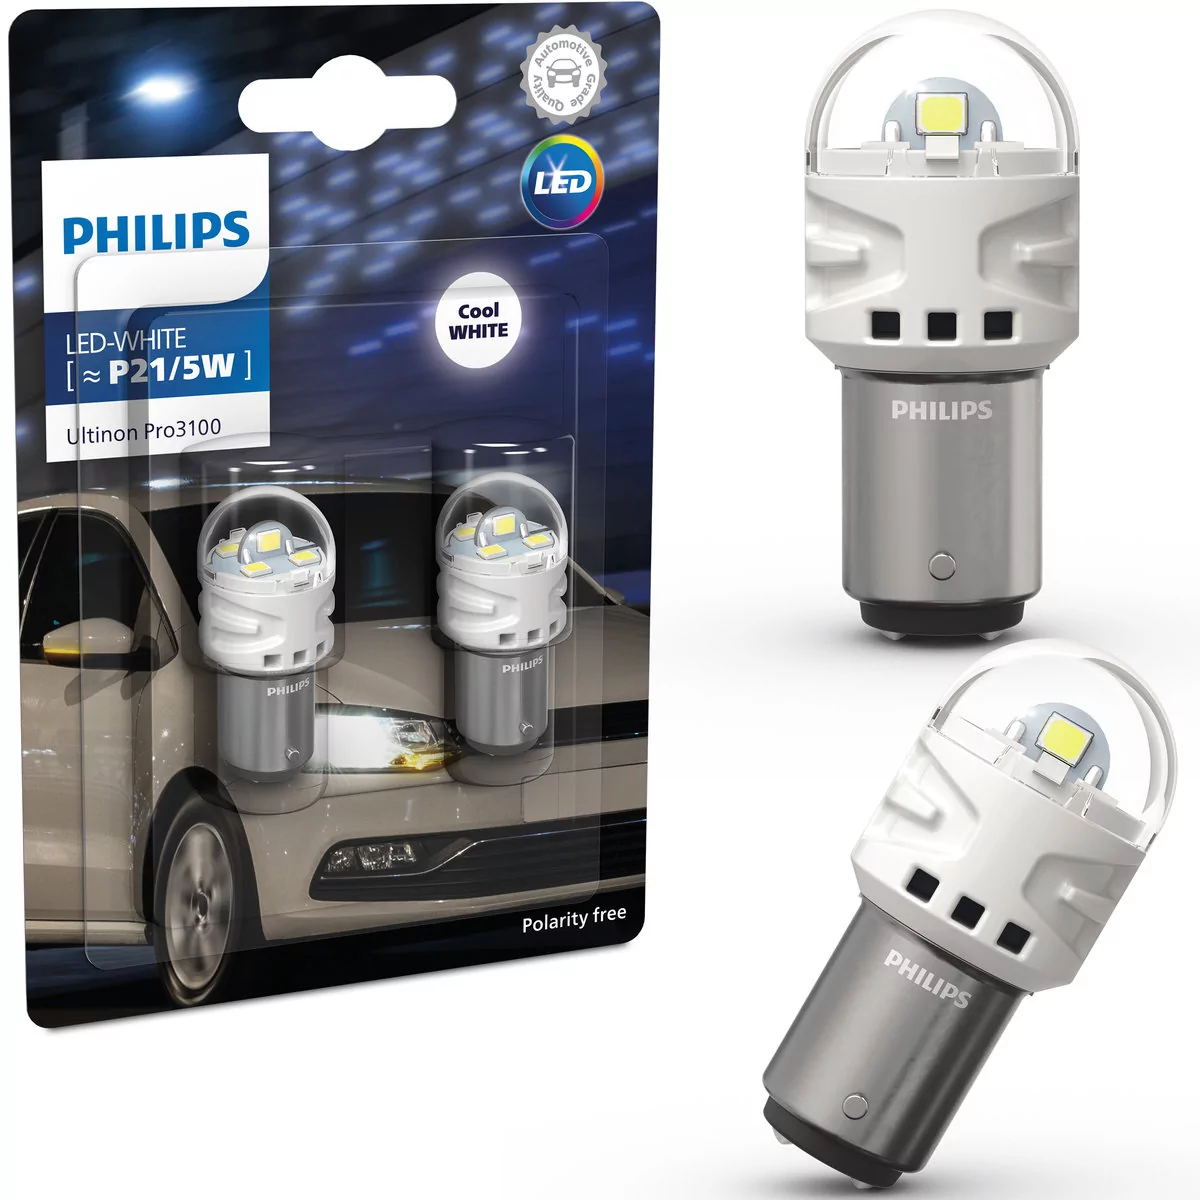 Żarówki Philips LED Ultinion Pro3100 P21/5W Red RU31 2szt